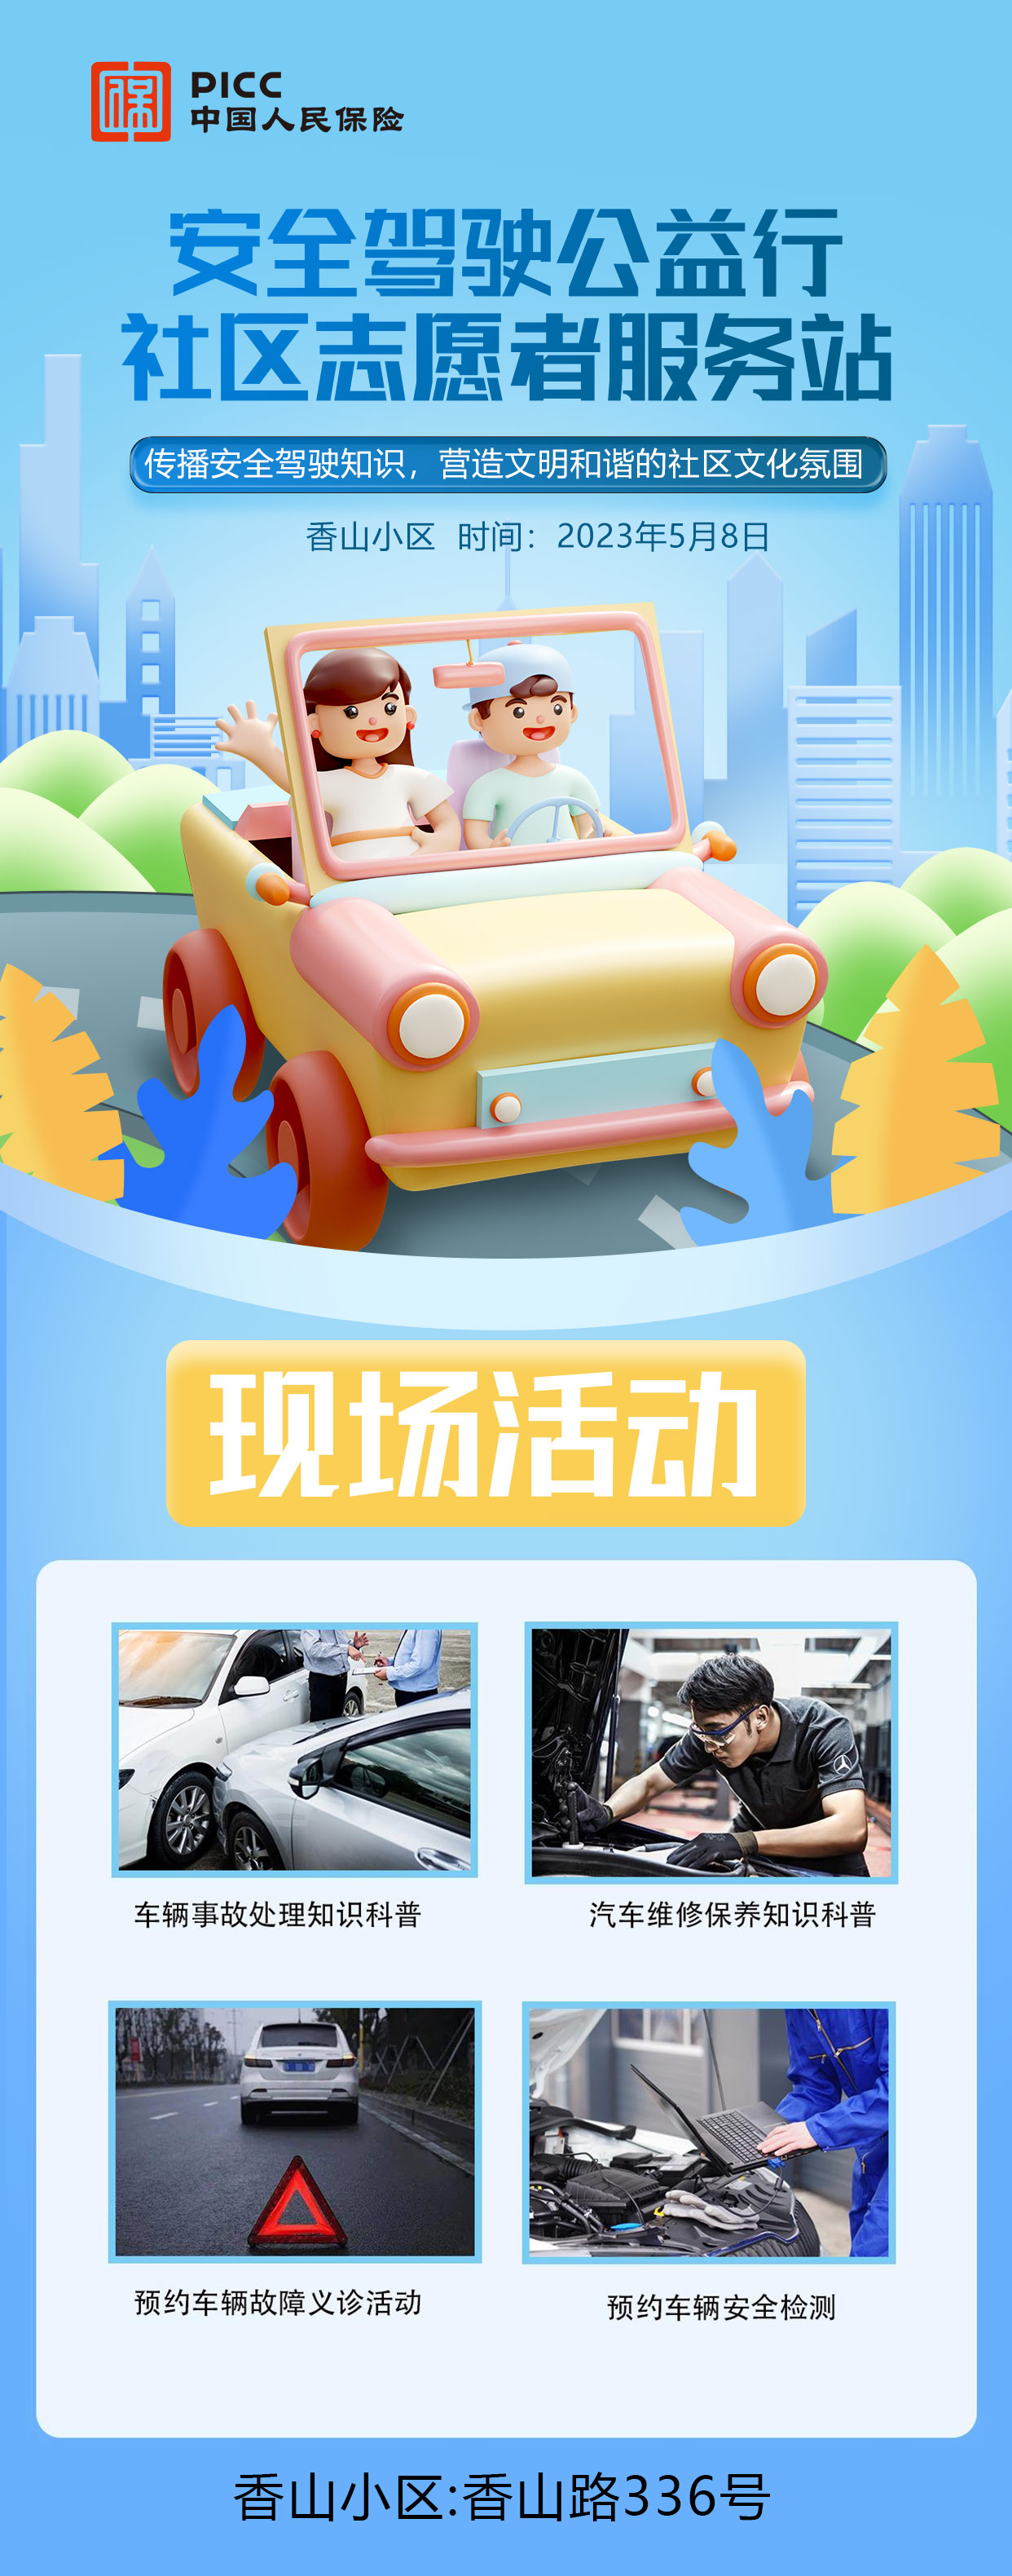 安全驾驶公益行 社区志愿者服务-香山小区站